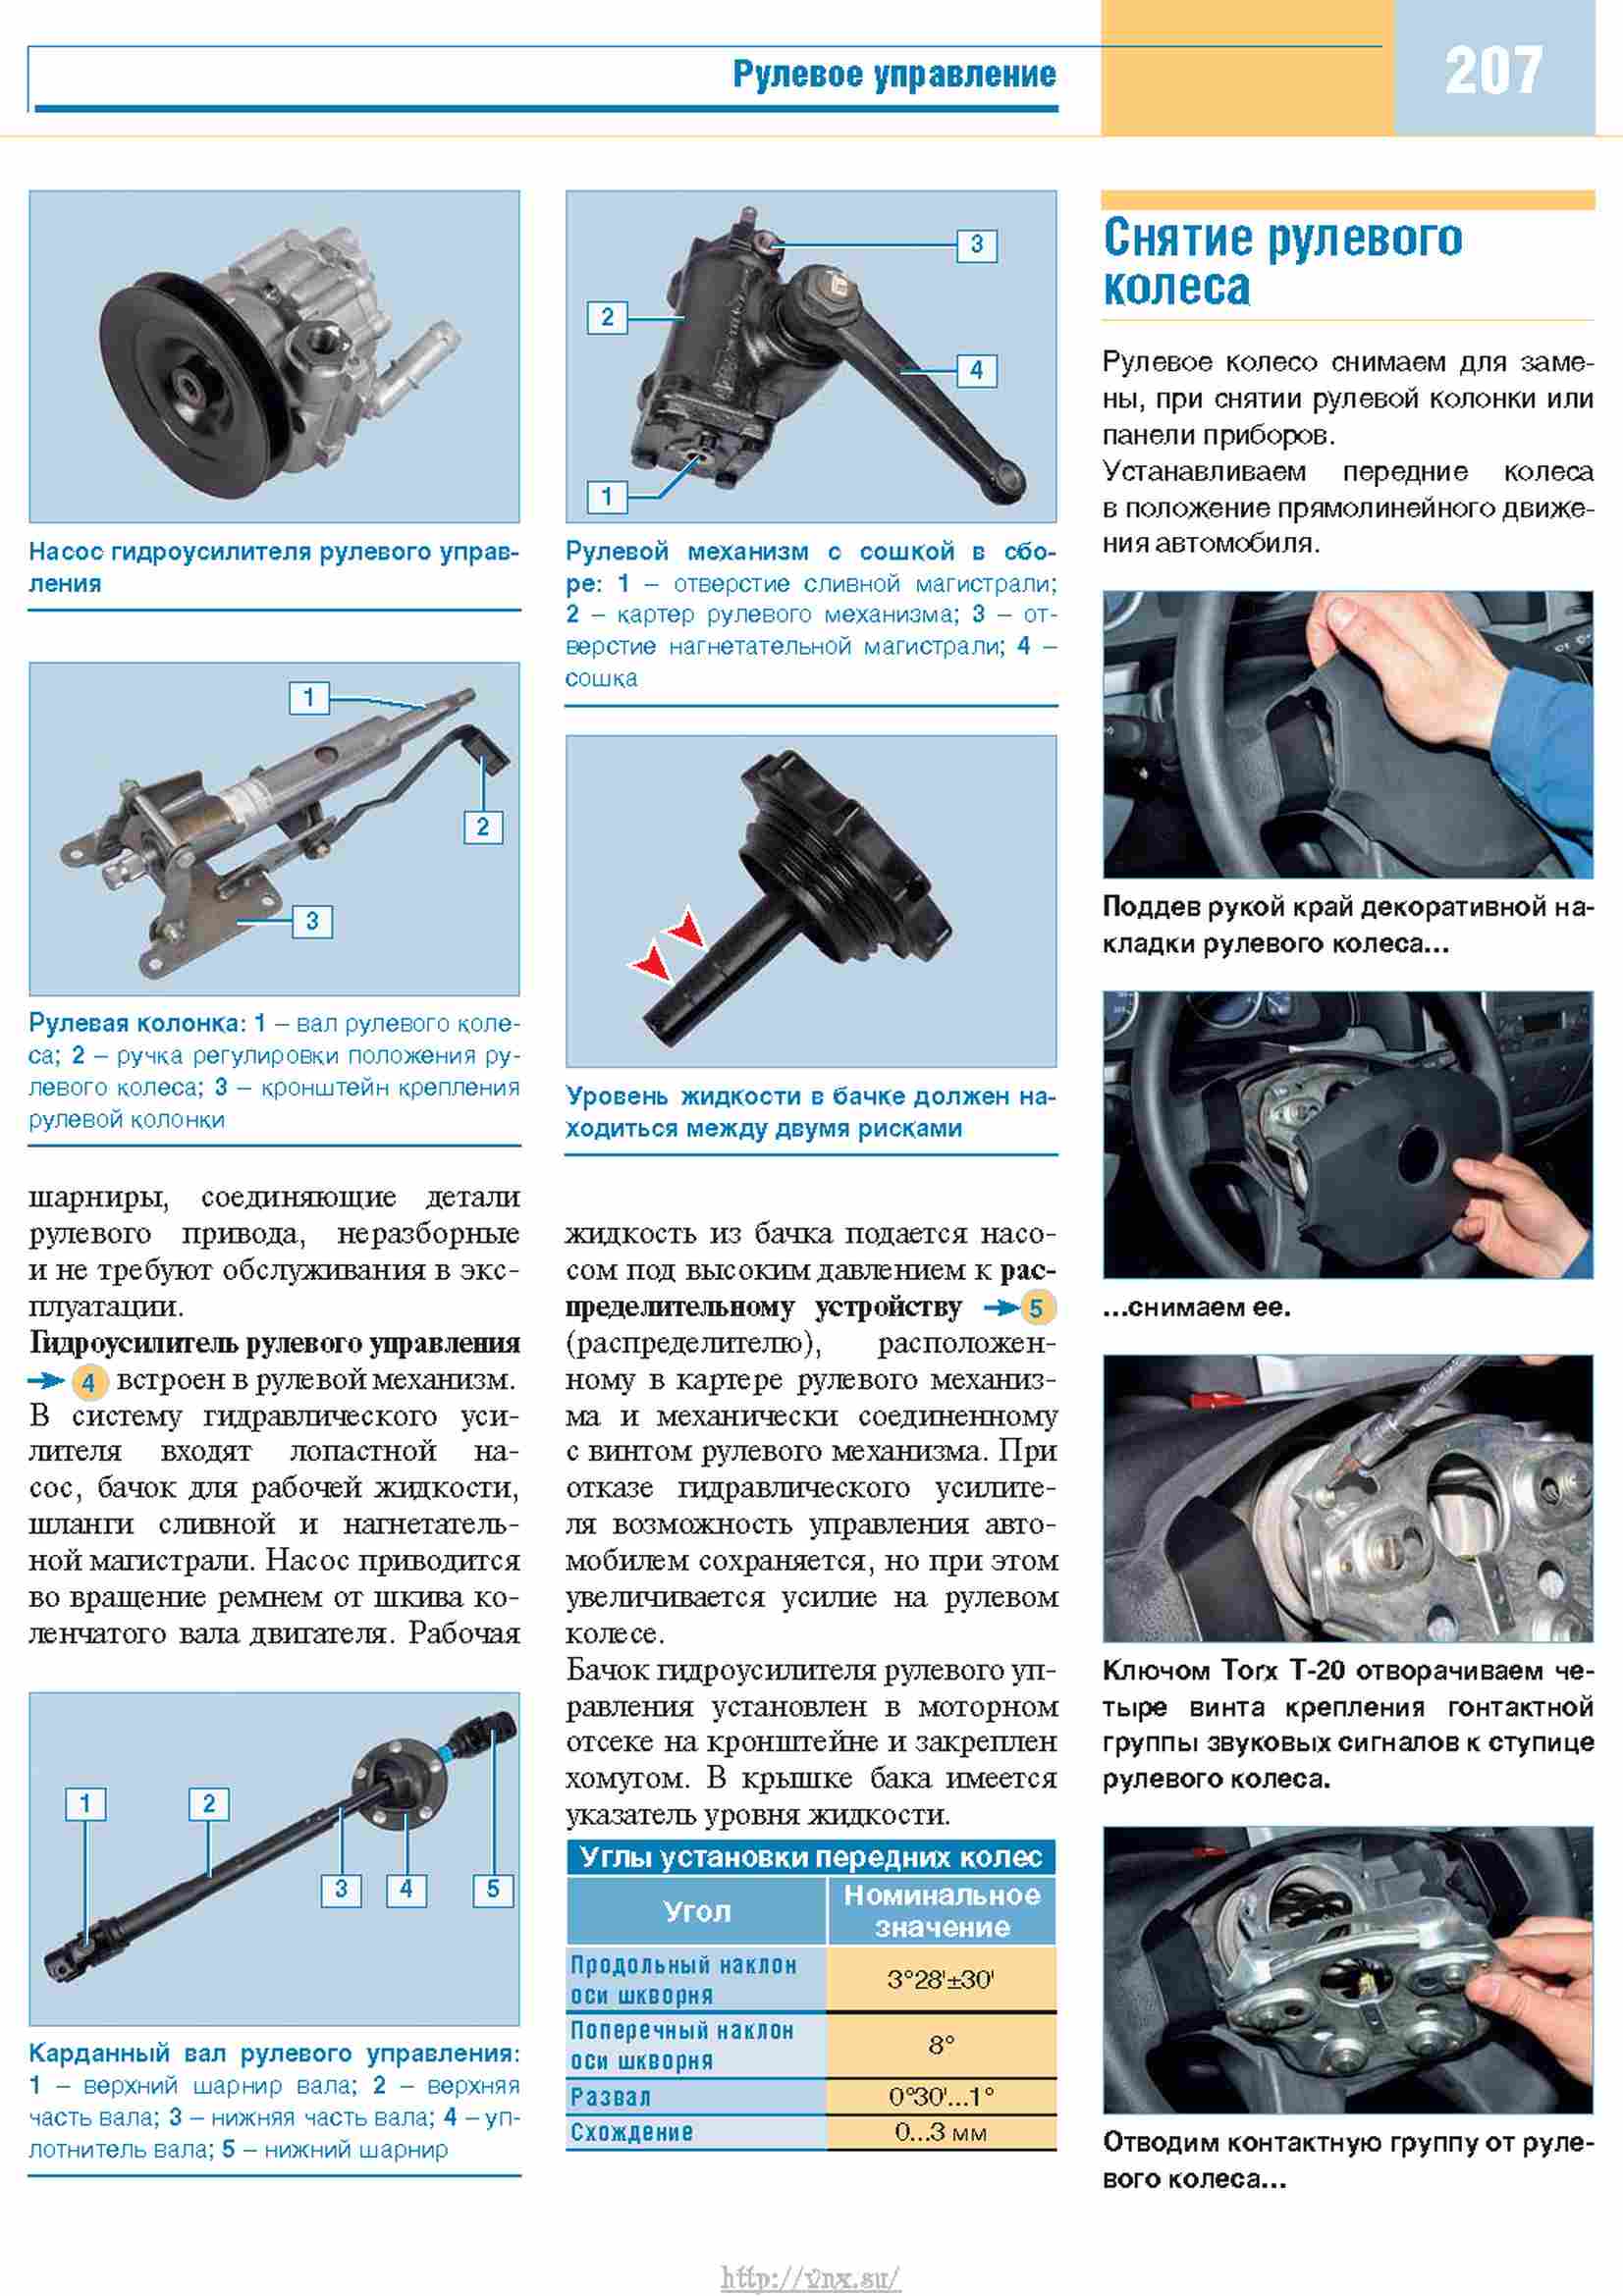 Схема рулевого управления ГАЗ 3302